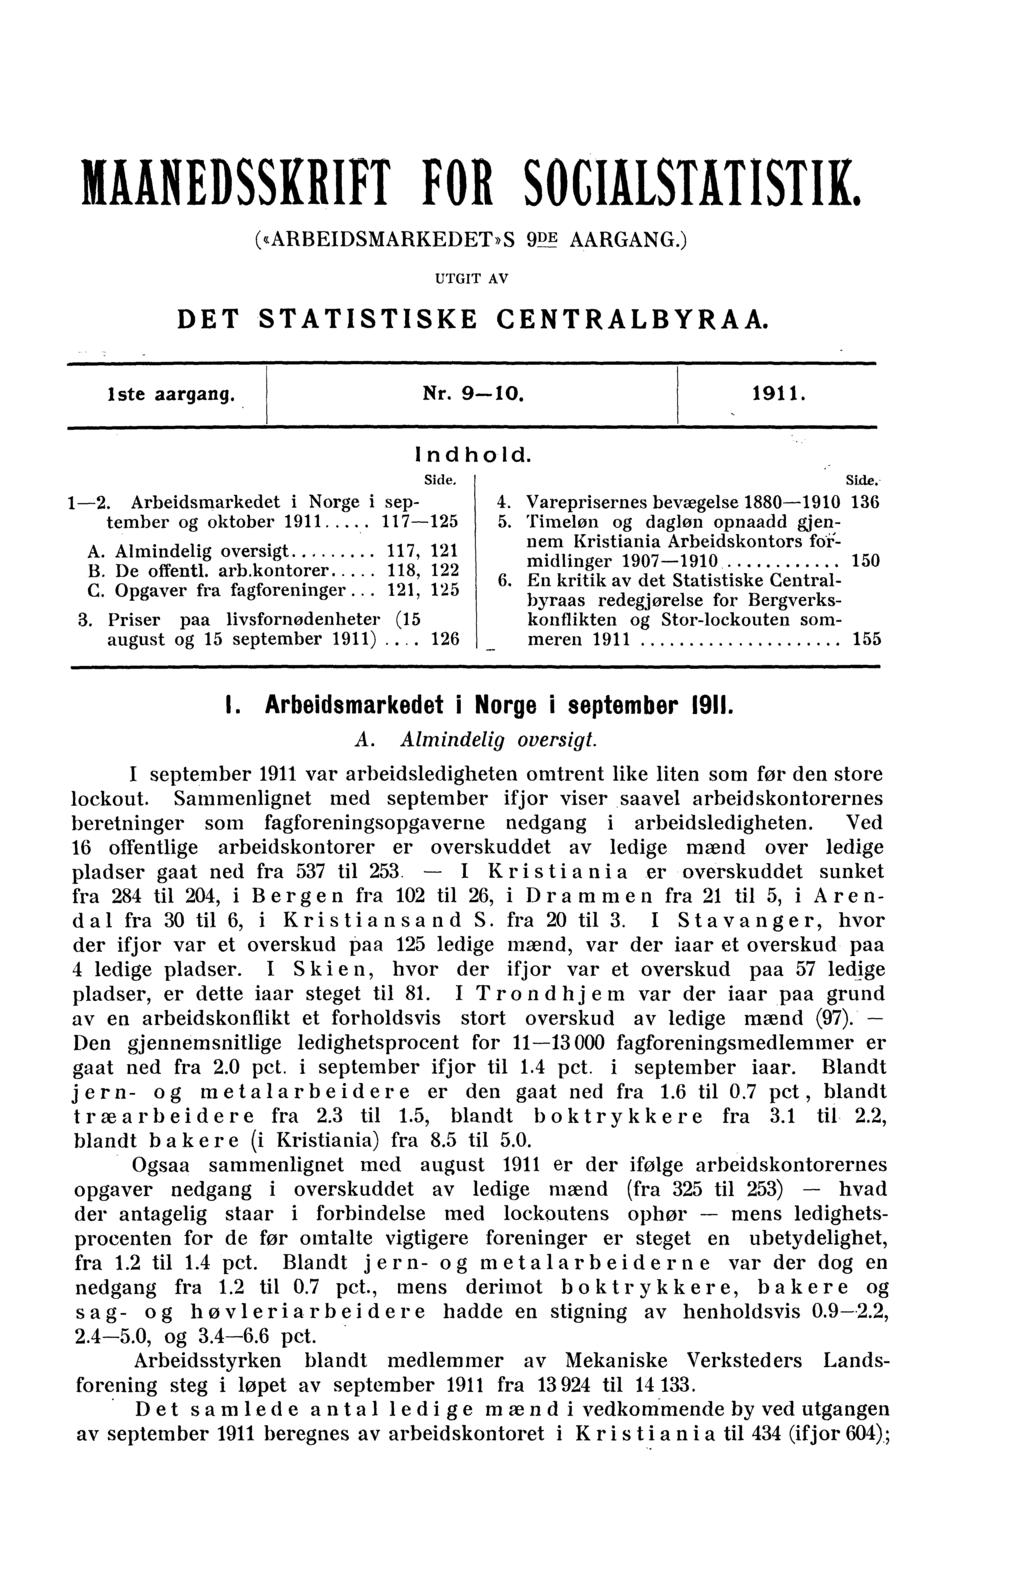 HANEDSSKRIFT FOR SOCIESMISTIK. («ARBEIDSMARKEDET»S 9P AARGANG.) UTGIT AV DET STATISTISKE CENTRALBYRAA. iste aargang. Nr. 9-10. 1911. 1-2. Arbeidsmarkedet i Norge i september og oktober 1911 117-125 A.